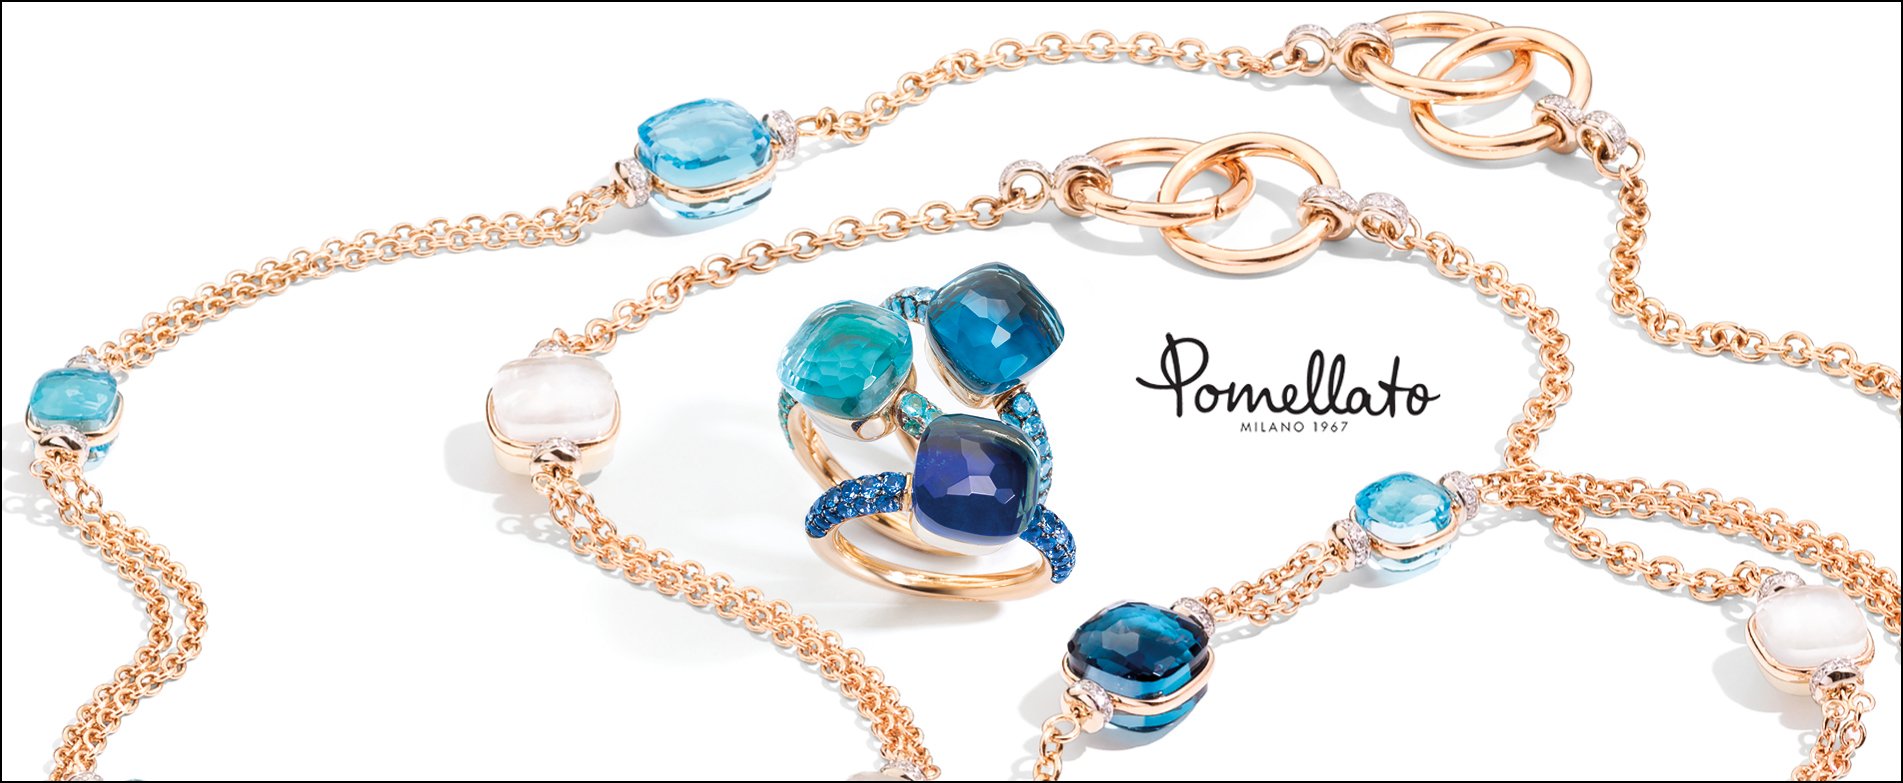 Chanel Fine Jewelry - Authorized Retailer - Ch Premier Jewelers